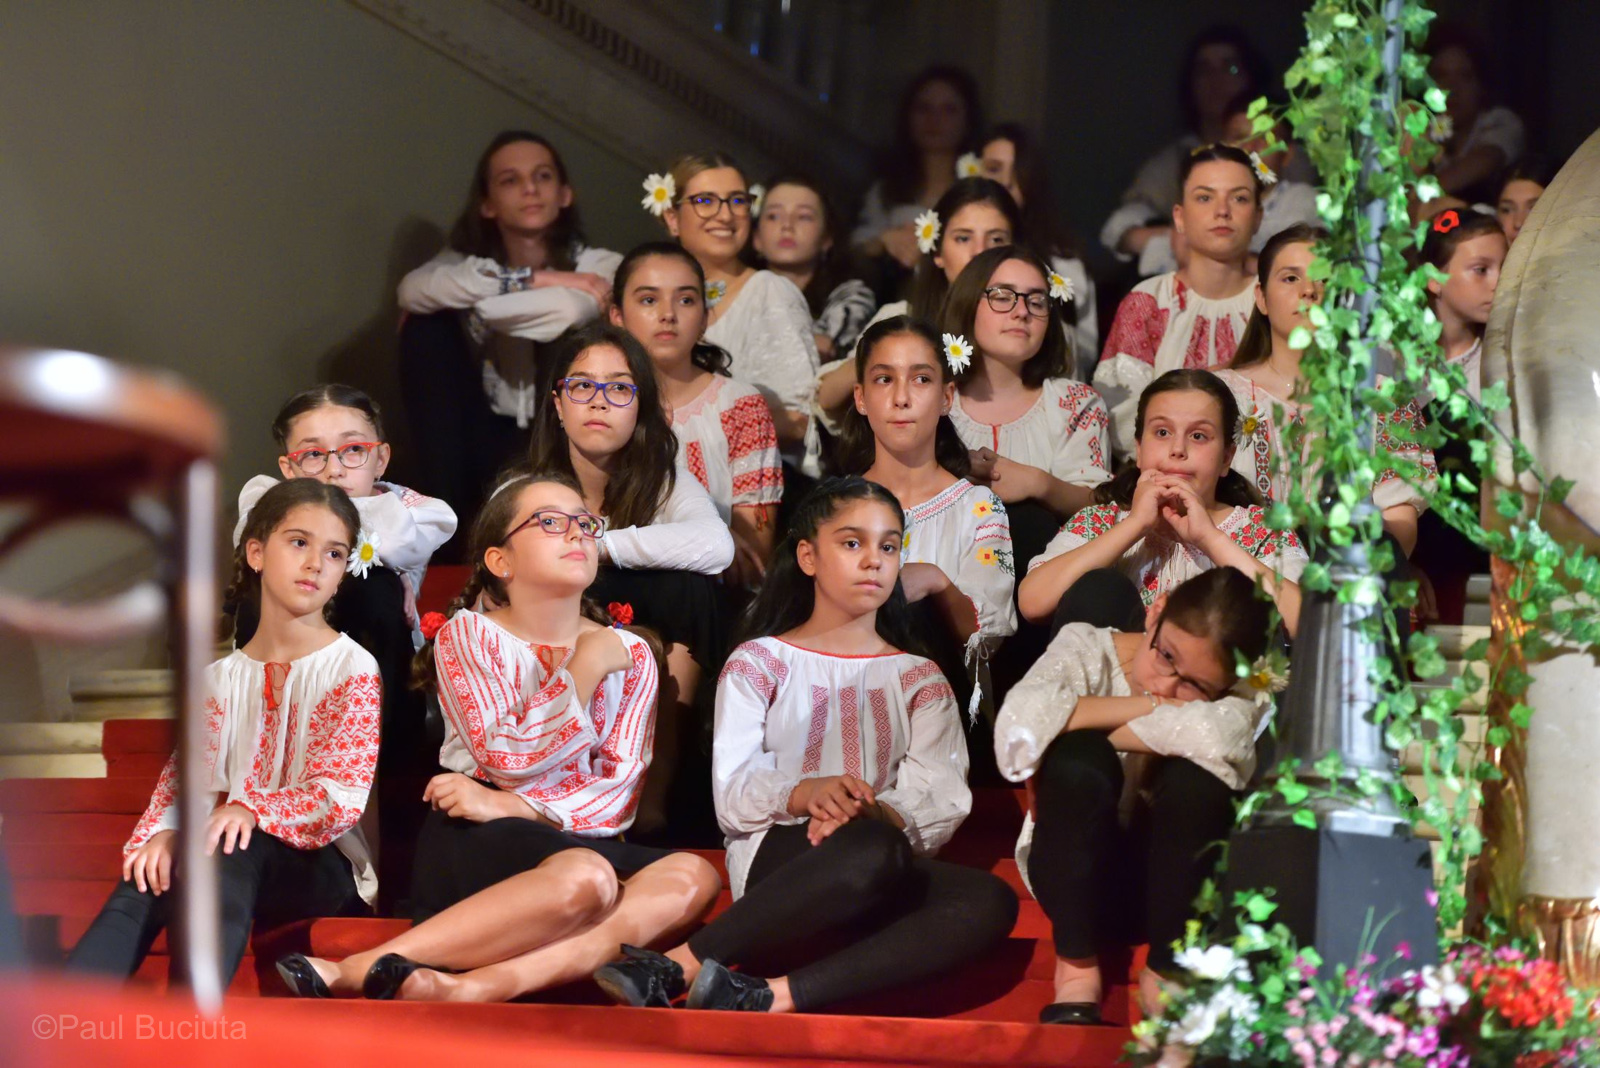 Parafraze cu parfum interbelic, un spectacol conceput si dirijat de Smaranda Morgovan si sustinut de Corul de Copii al Operei Nationale Bucuresti si de invitatii sai.